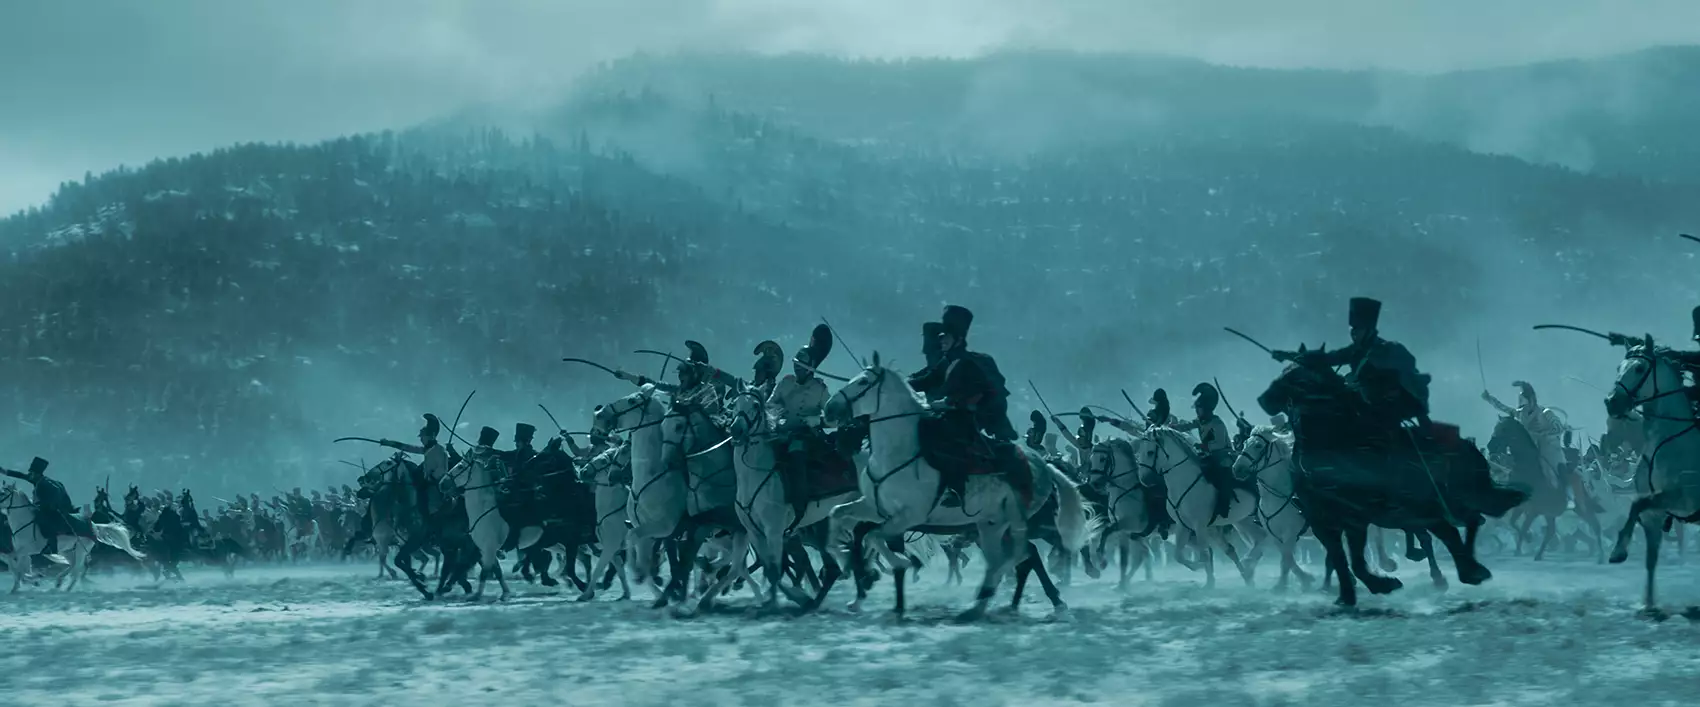 La maestria cinématographique de Dariusz Wolski dans "Napoléon" de Ridley Scott